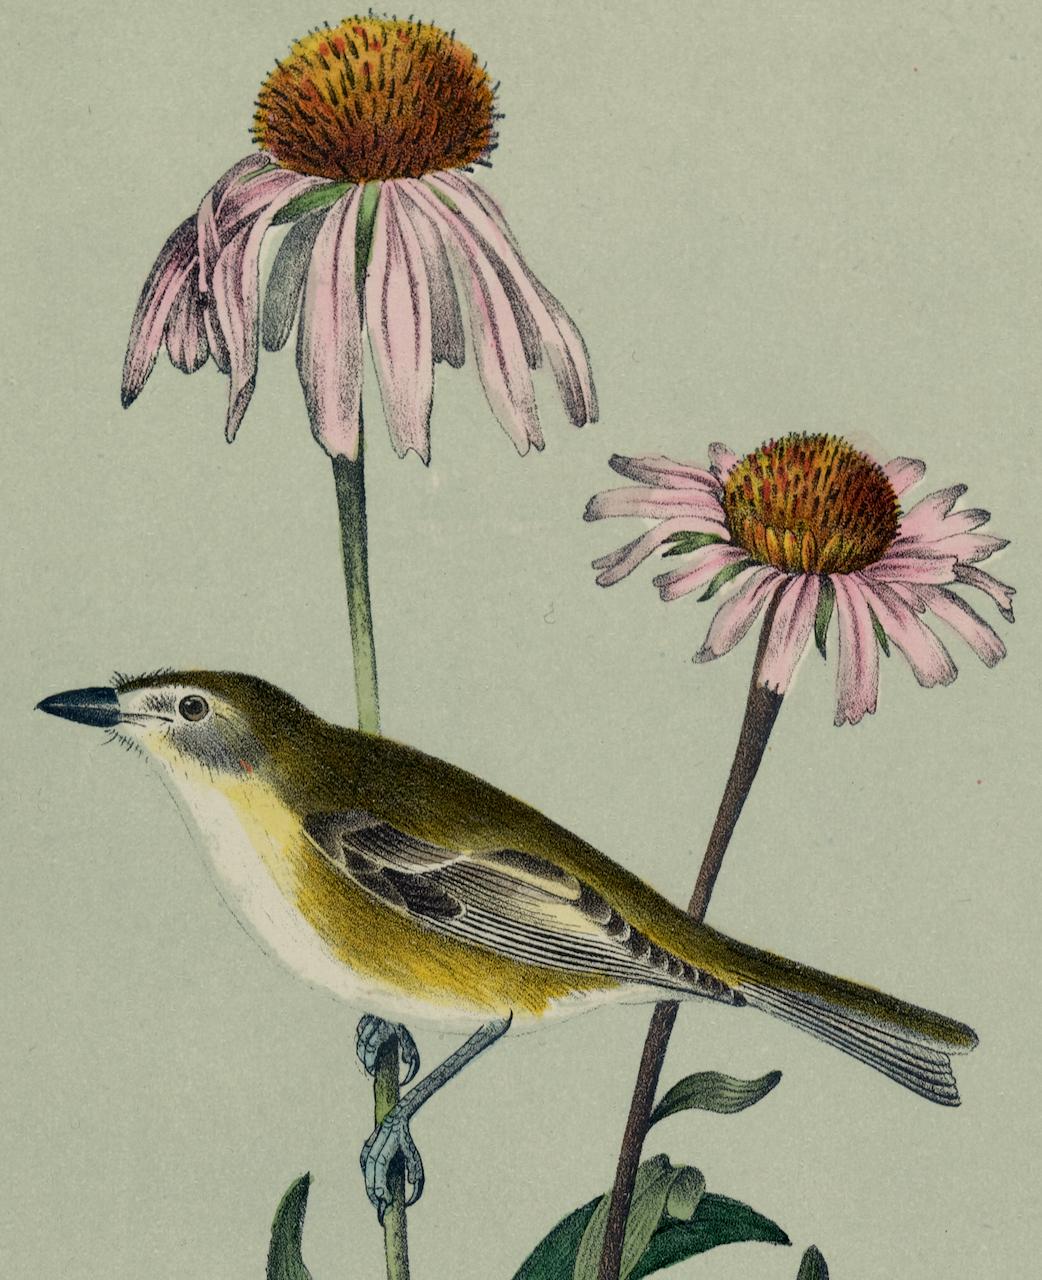 Le Vireo d'Audubon : une lithographie originale d'oiseaux colorée à la main du 19e siècle  - Naturalisme Print par John James Audubon